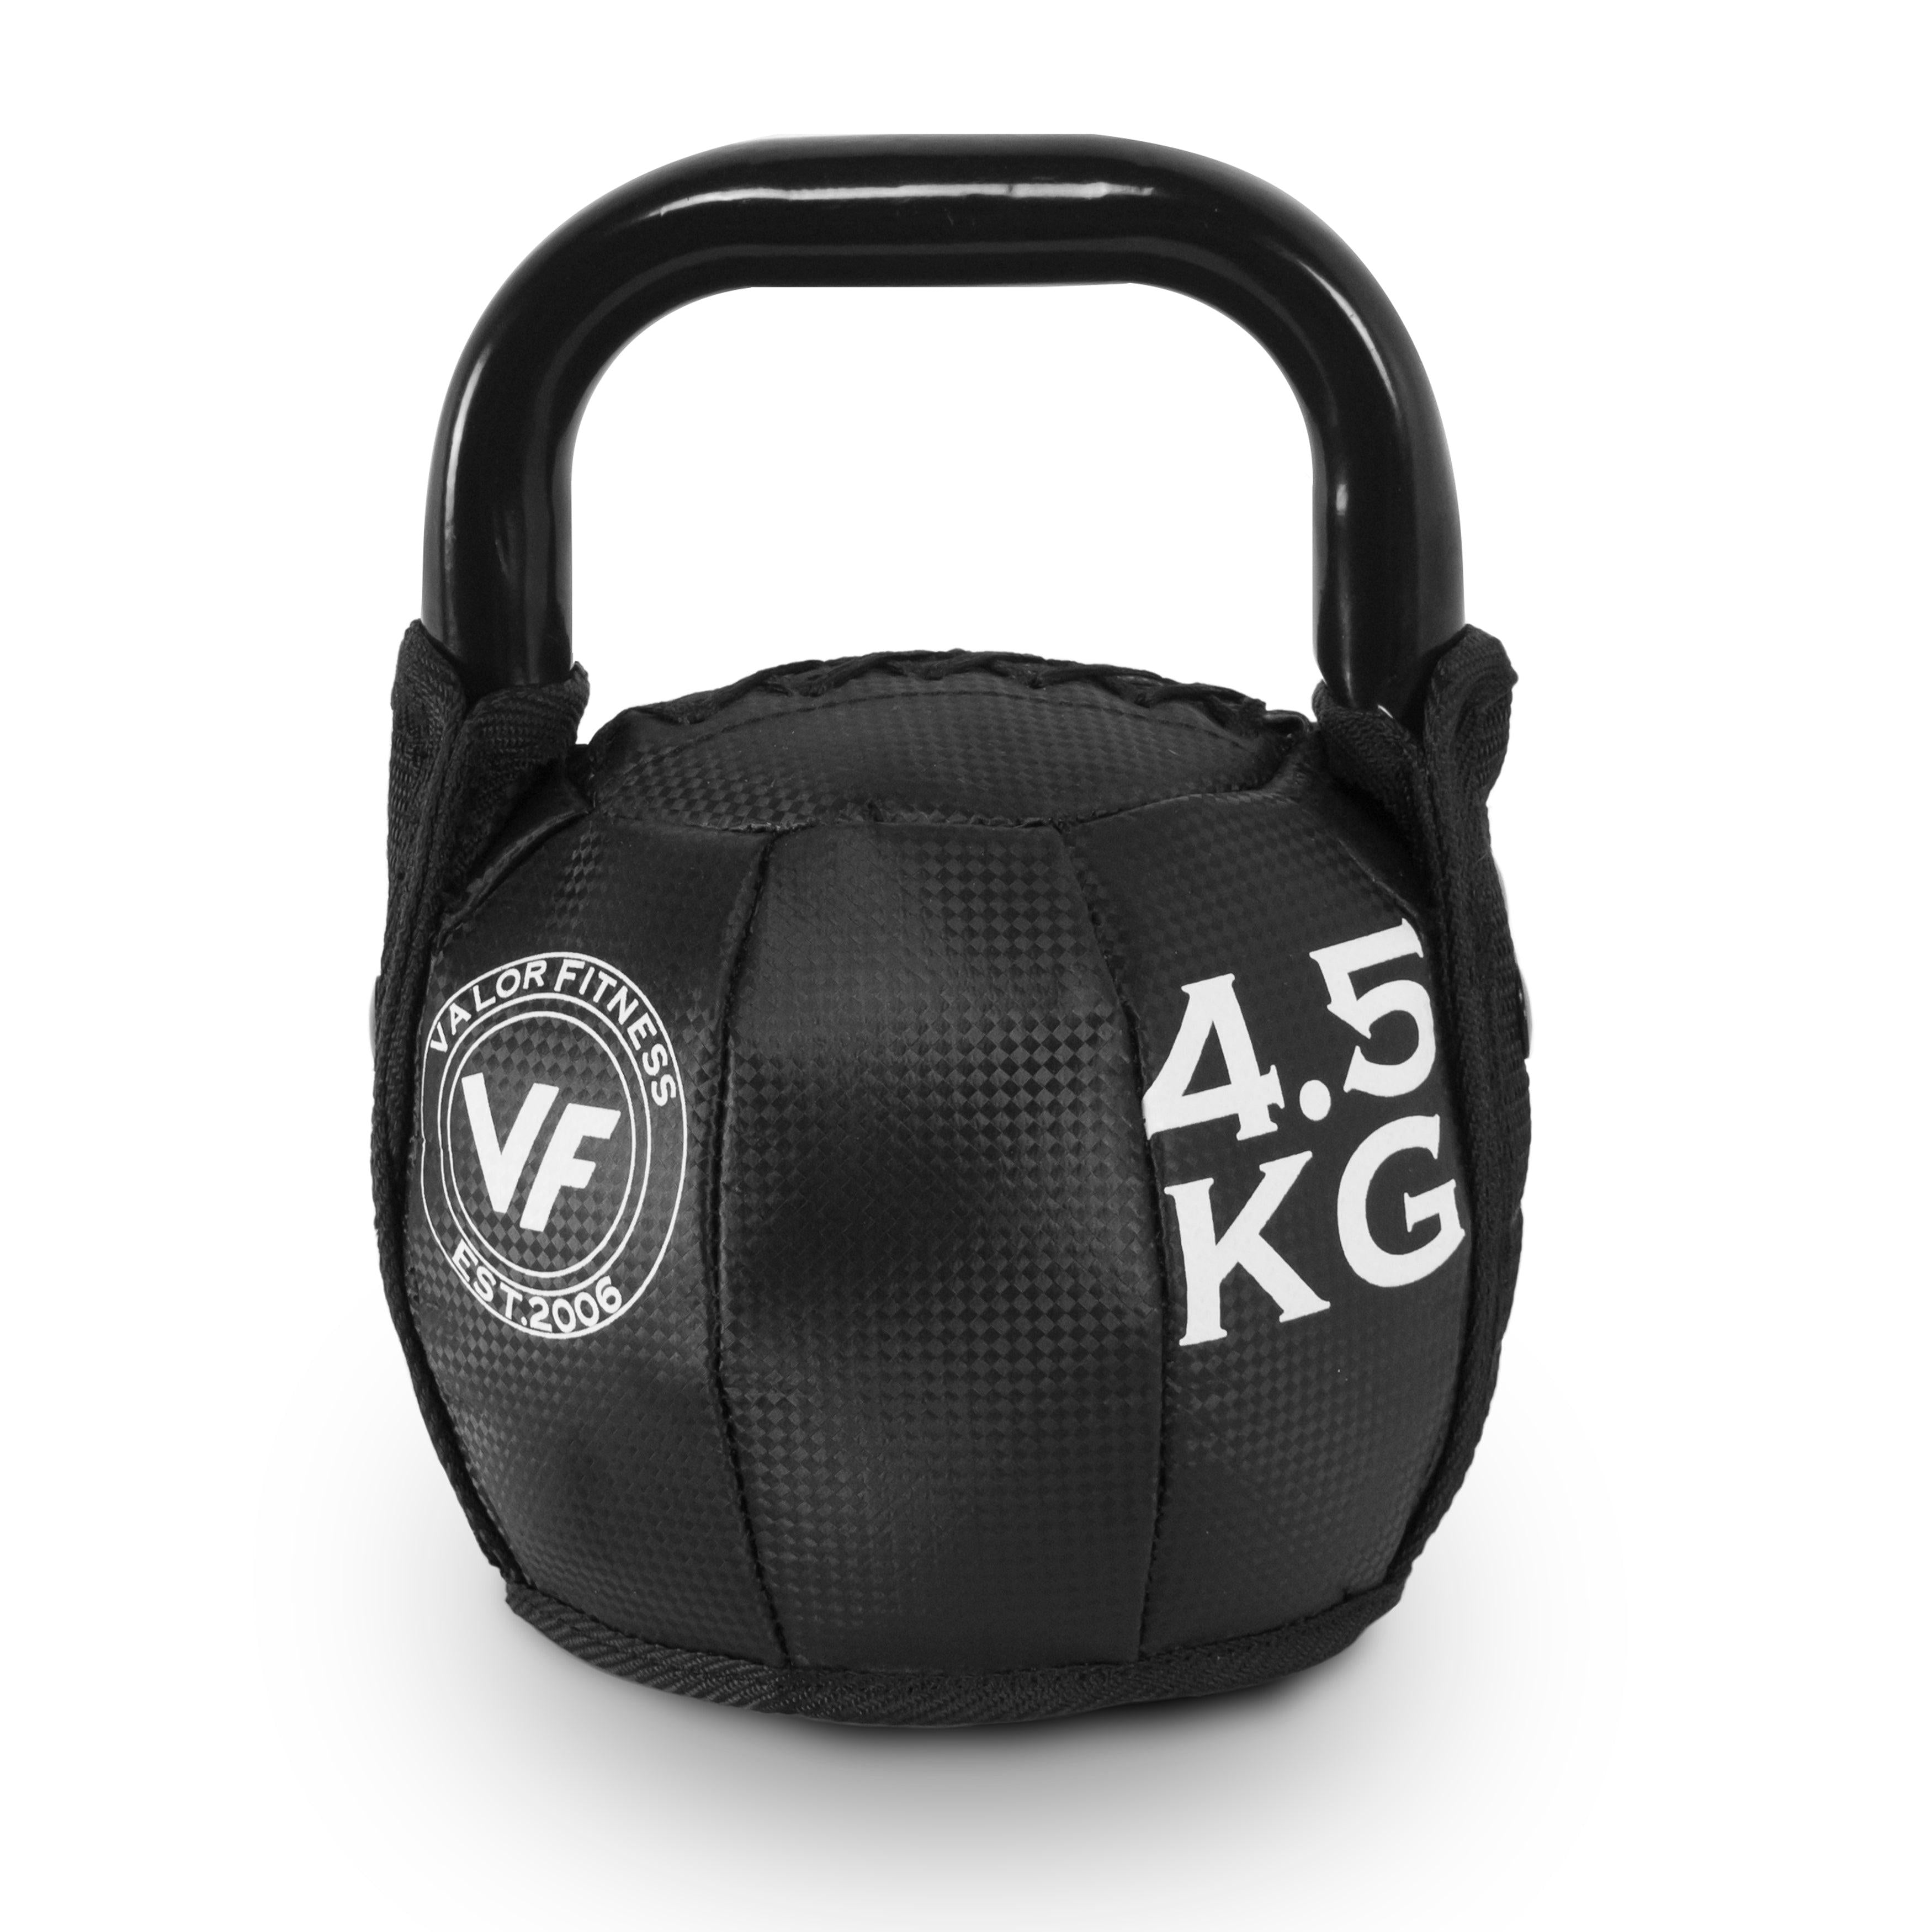 Soft - Valor (Size Fitness 10-35lb) Kettlebell